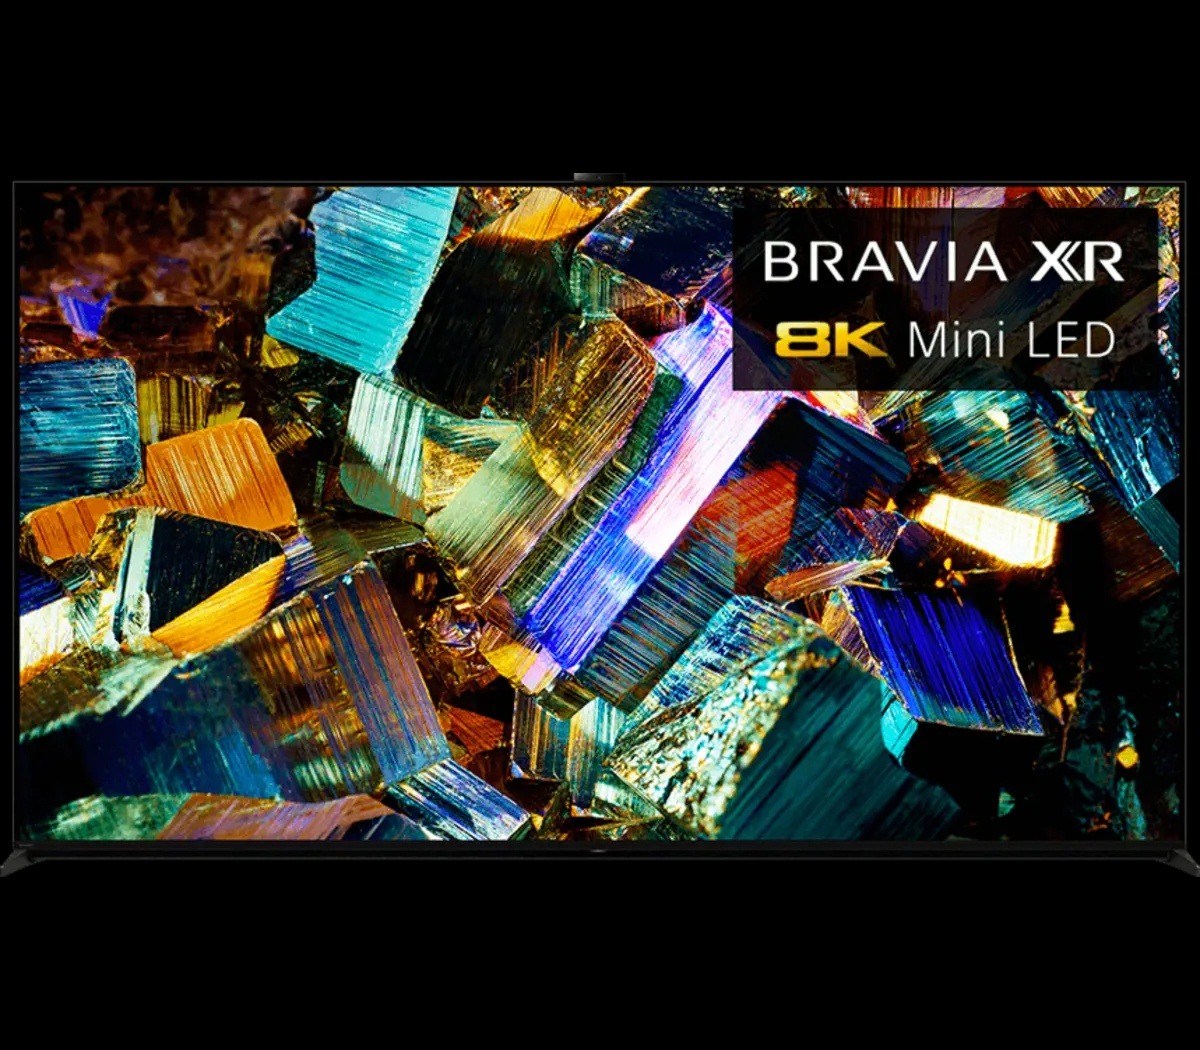 Sony 8K Mini LED 75" TV Bravia XR Z9K Smart HDR Television